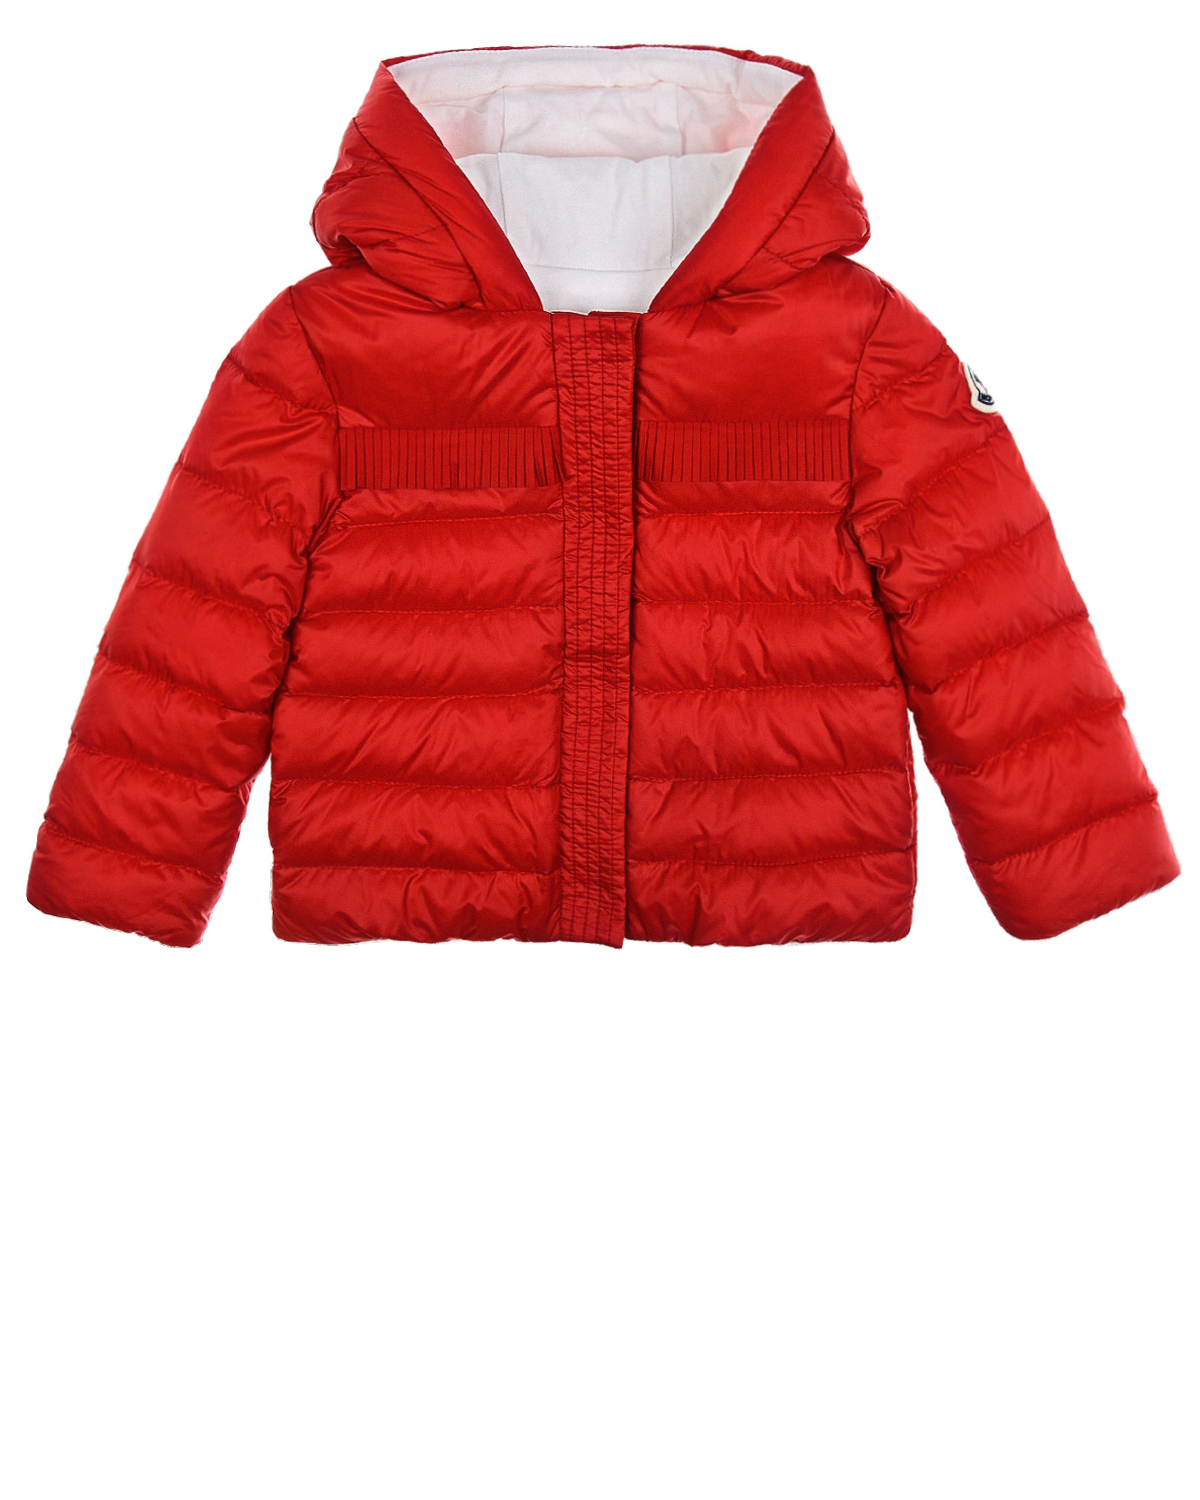 Купить Красная стеганая куртка с капюшоном Moncler, Красный, 100%полиамид, 100%хлопок, 90%пух+10%перо